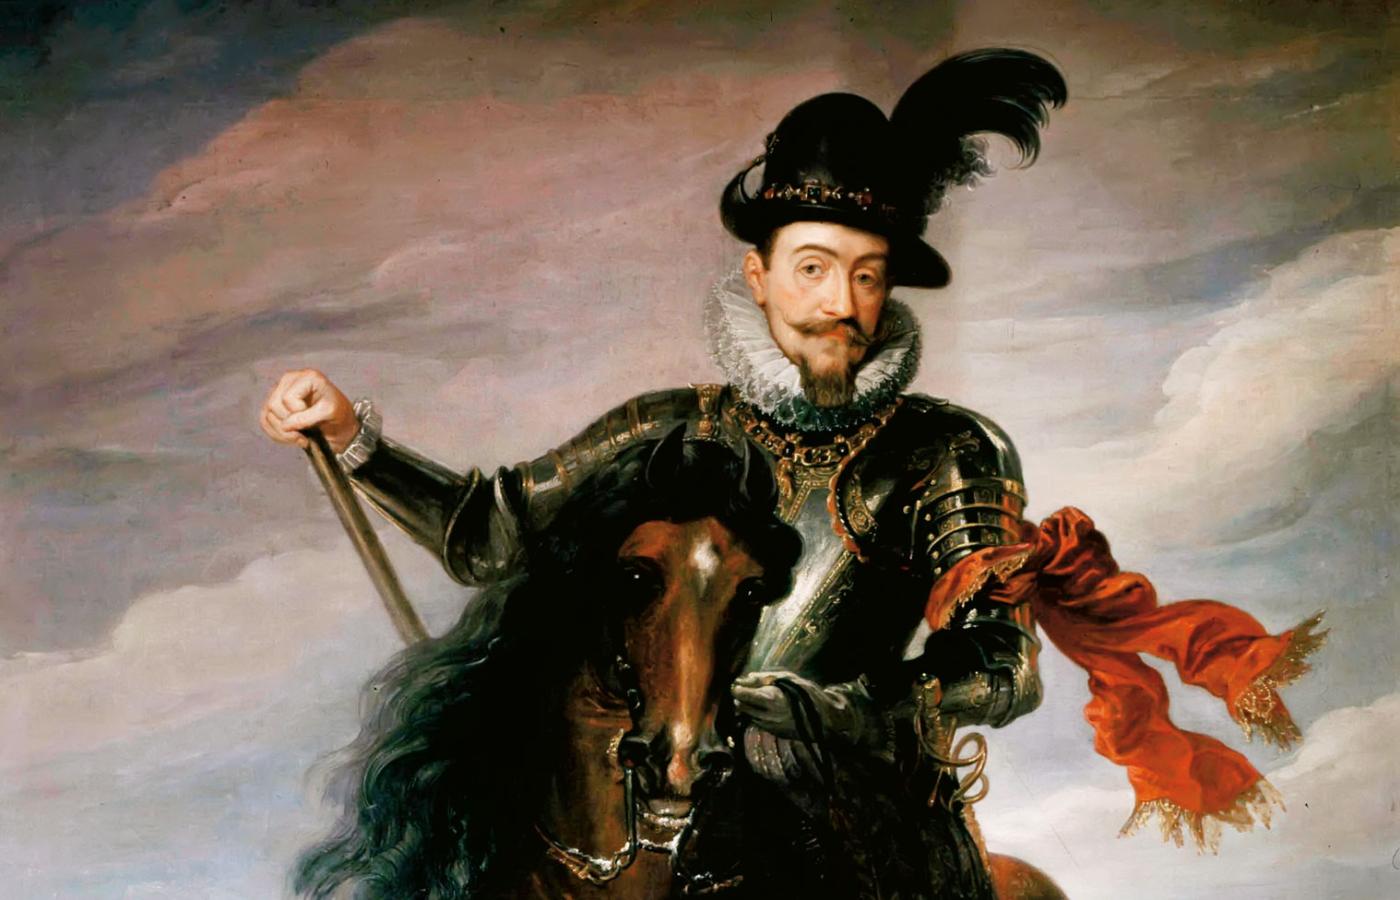 Portret Zygmunta III Wazy, króla Rzeczpospolitej Obojga
Narodów